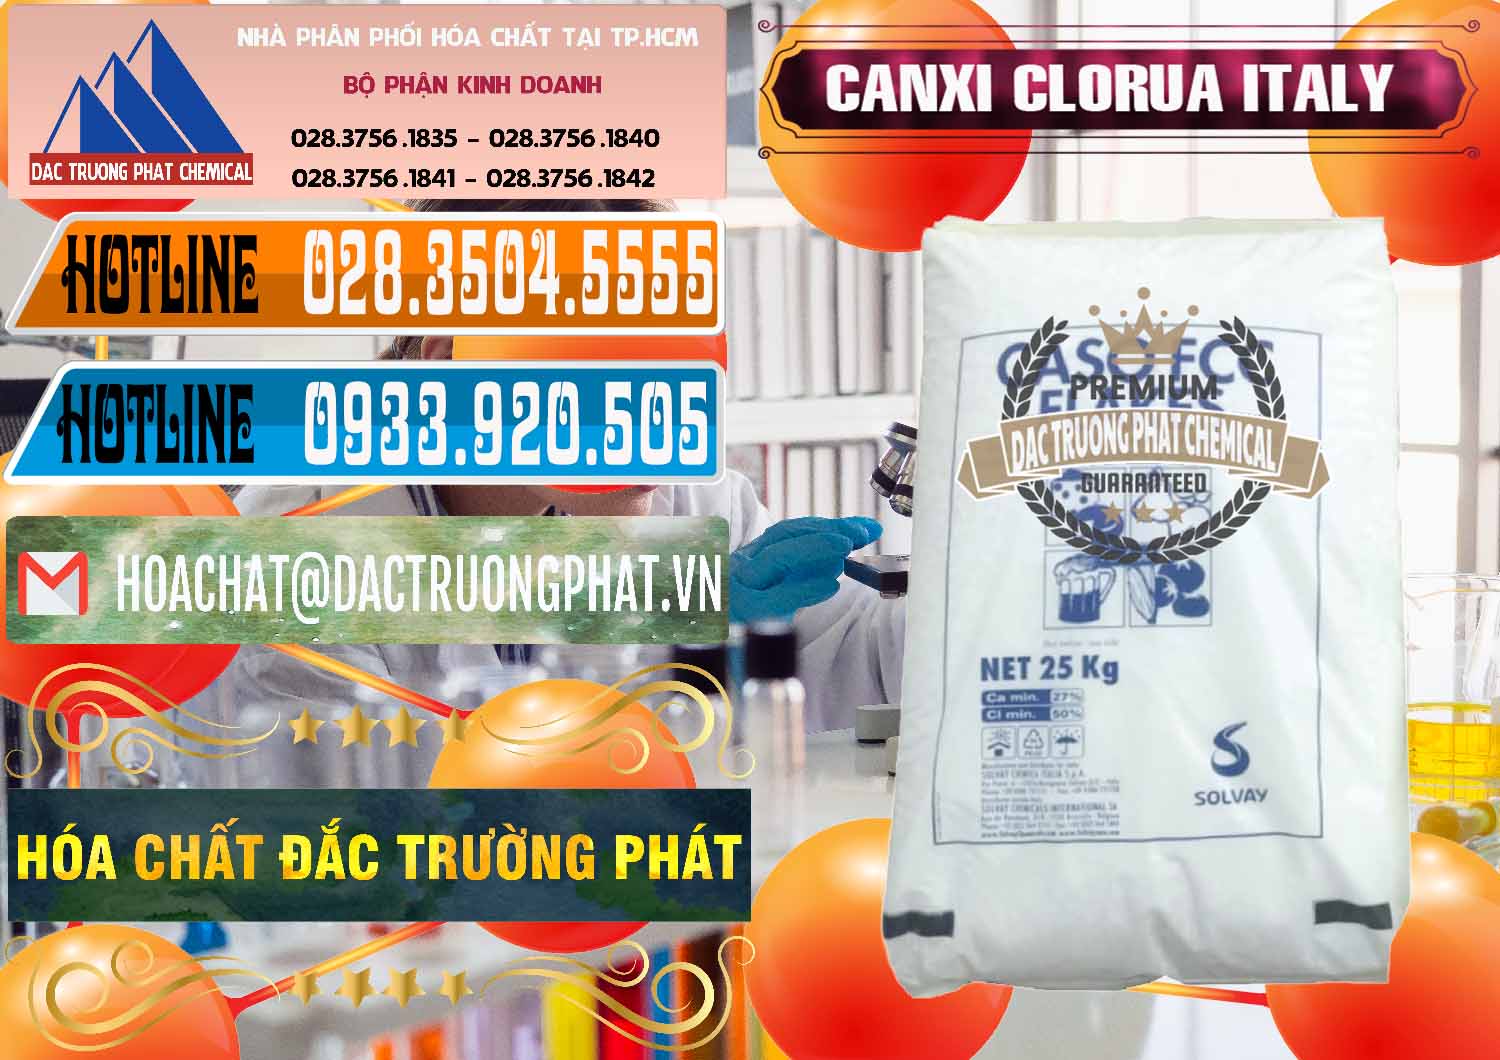 Cty chuyên cung ứng _ bán CaCl2 – Canxi Clorua Food Grade Ý Italy - 0435 - Cty chuyên cung cấp - kinh doanh hóa chất tại TP.HCM - stmp.net